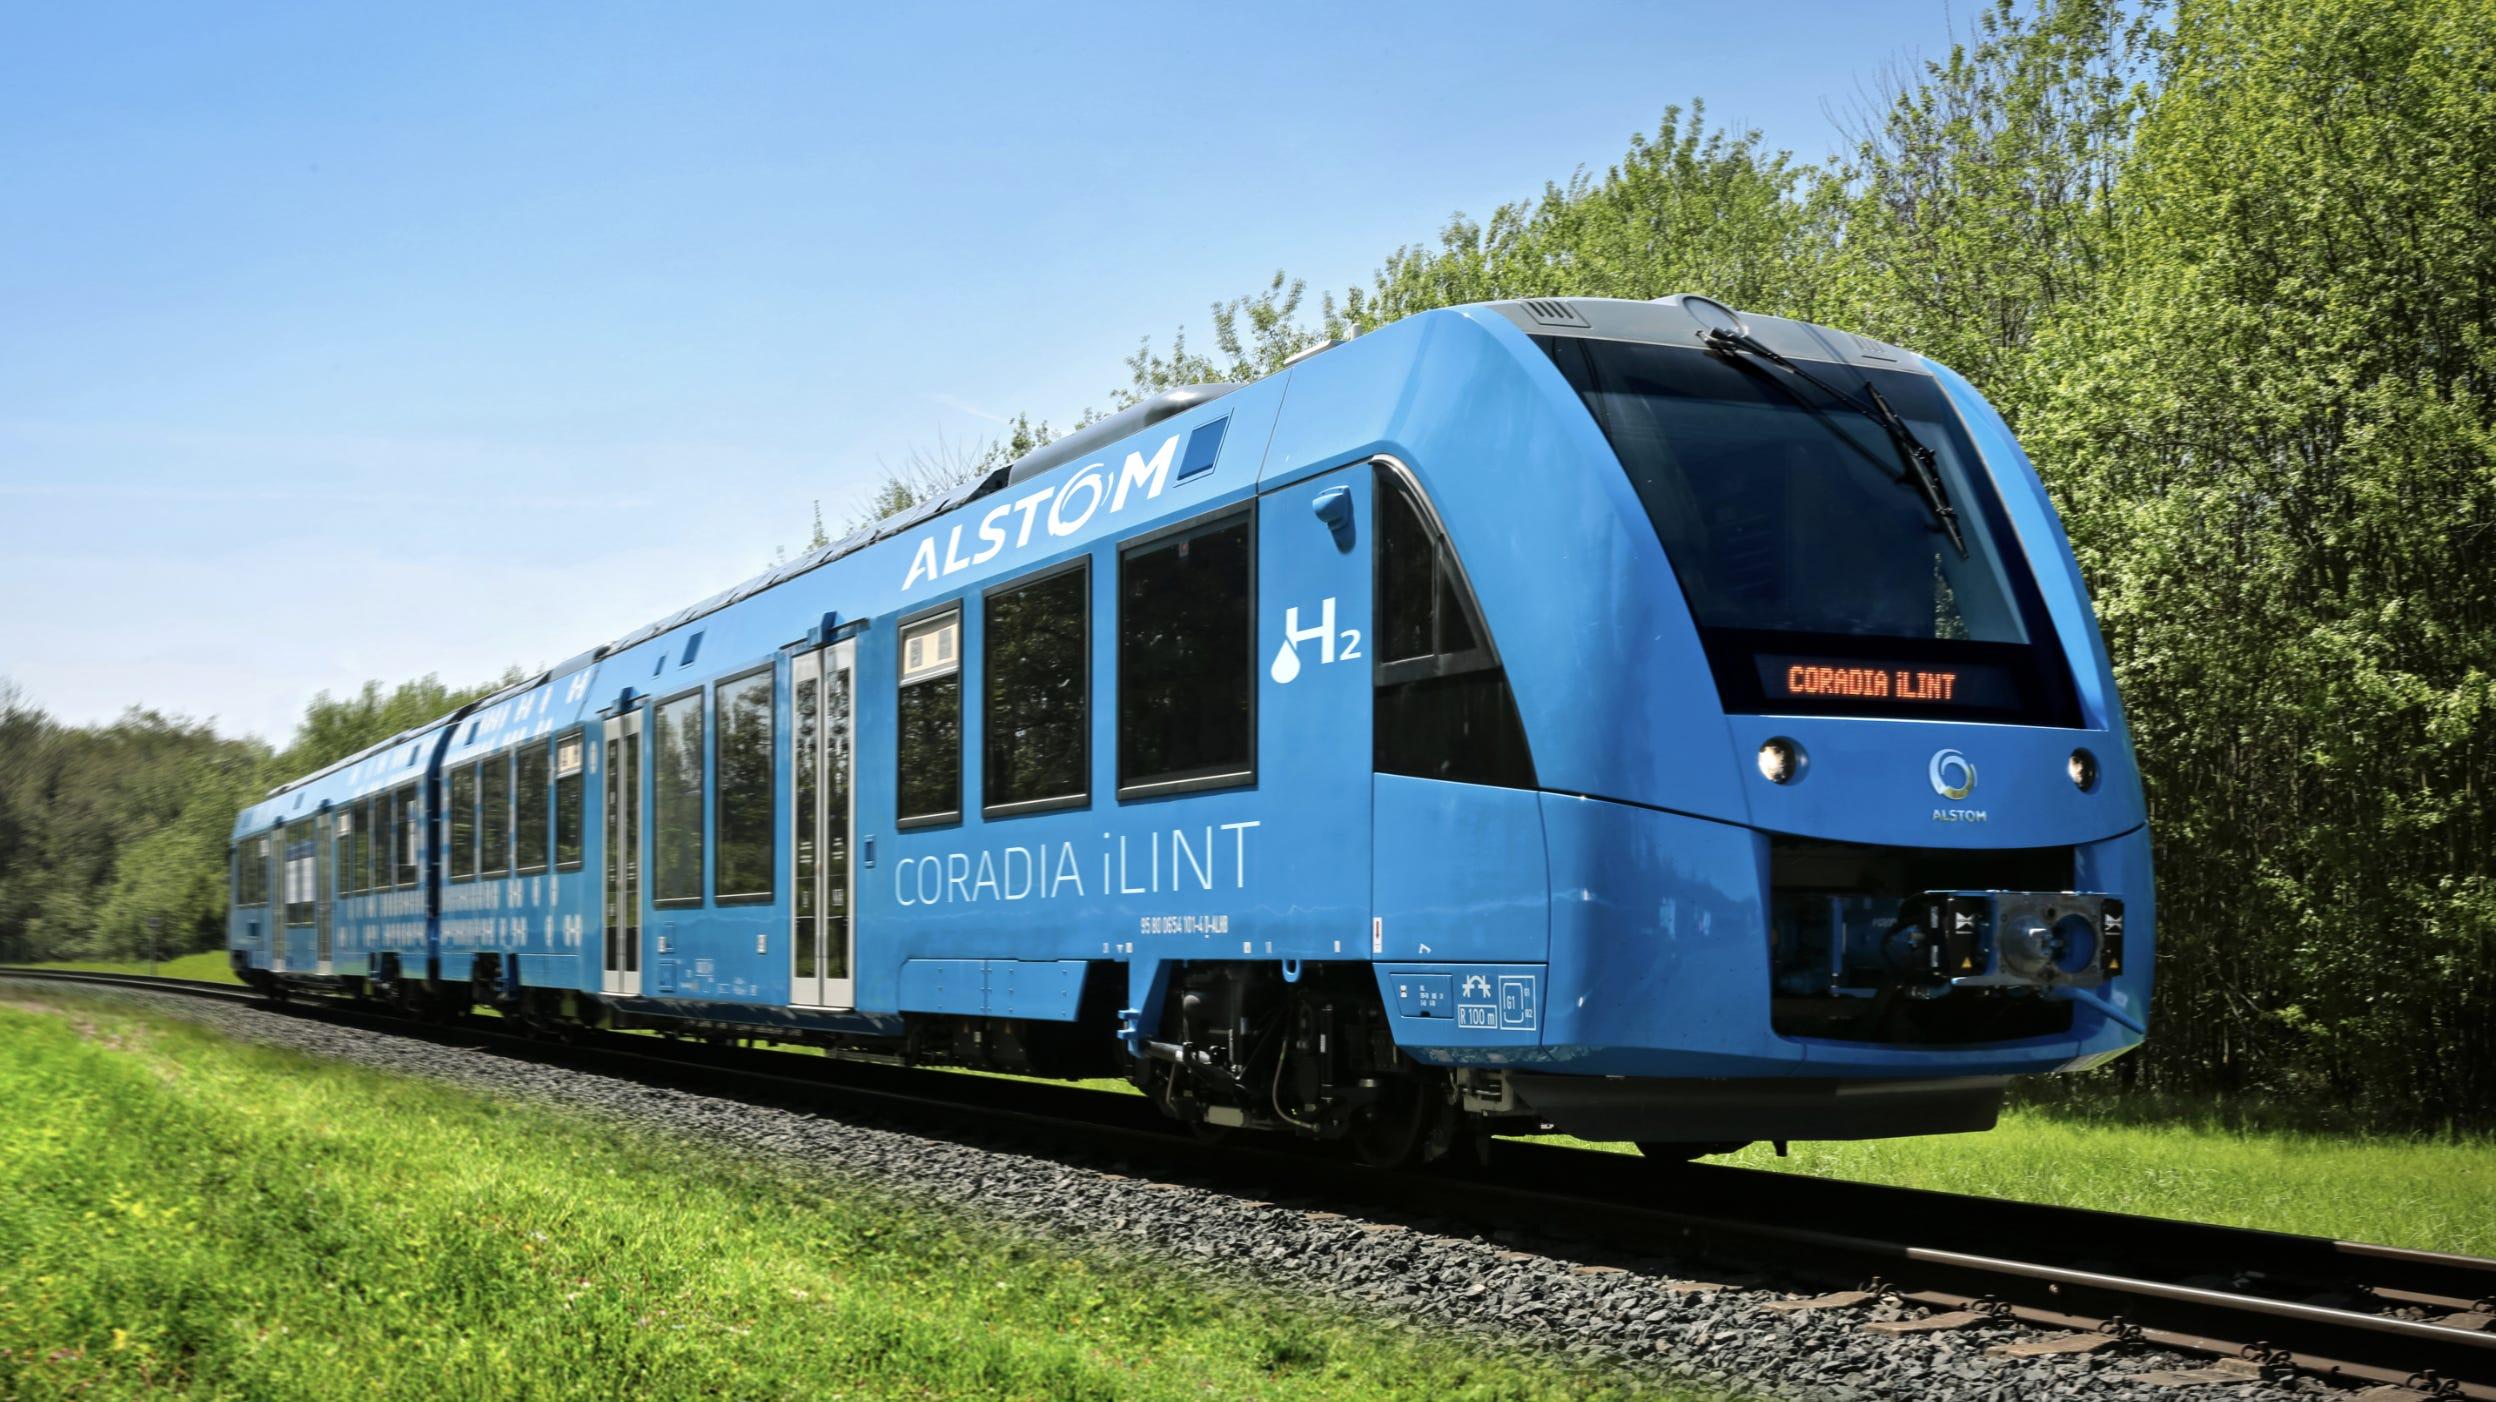 北米初、水素列車を試験運行…カナダ・ケベック州でこの夏に開始 | Business Insider Japan